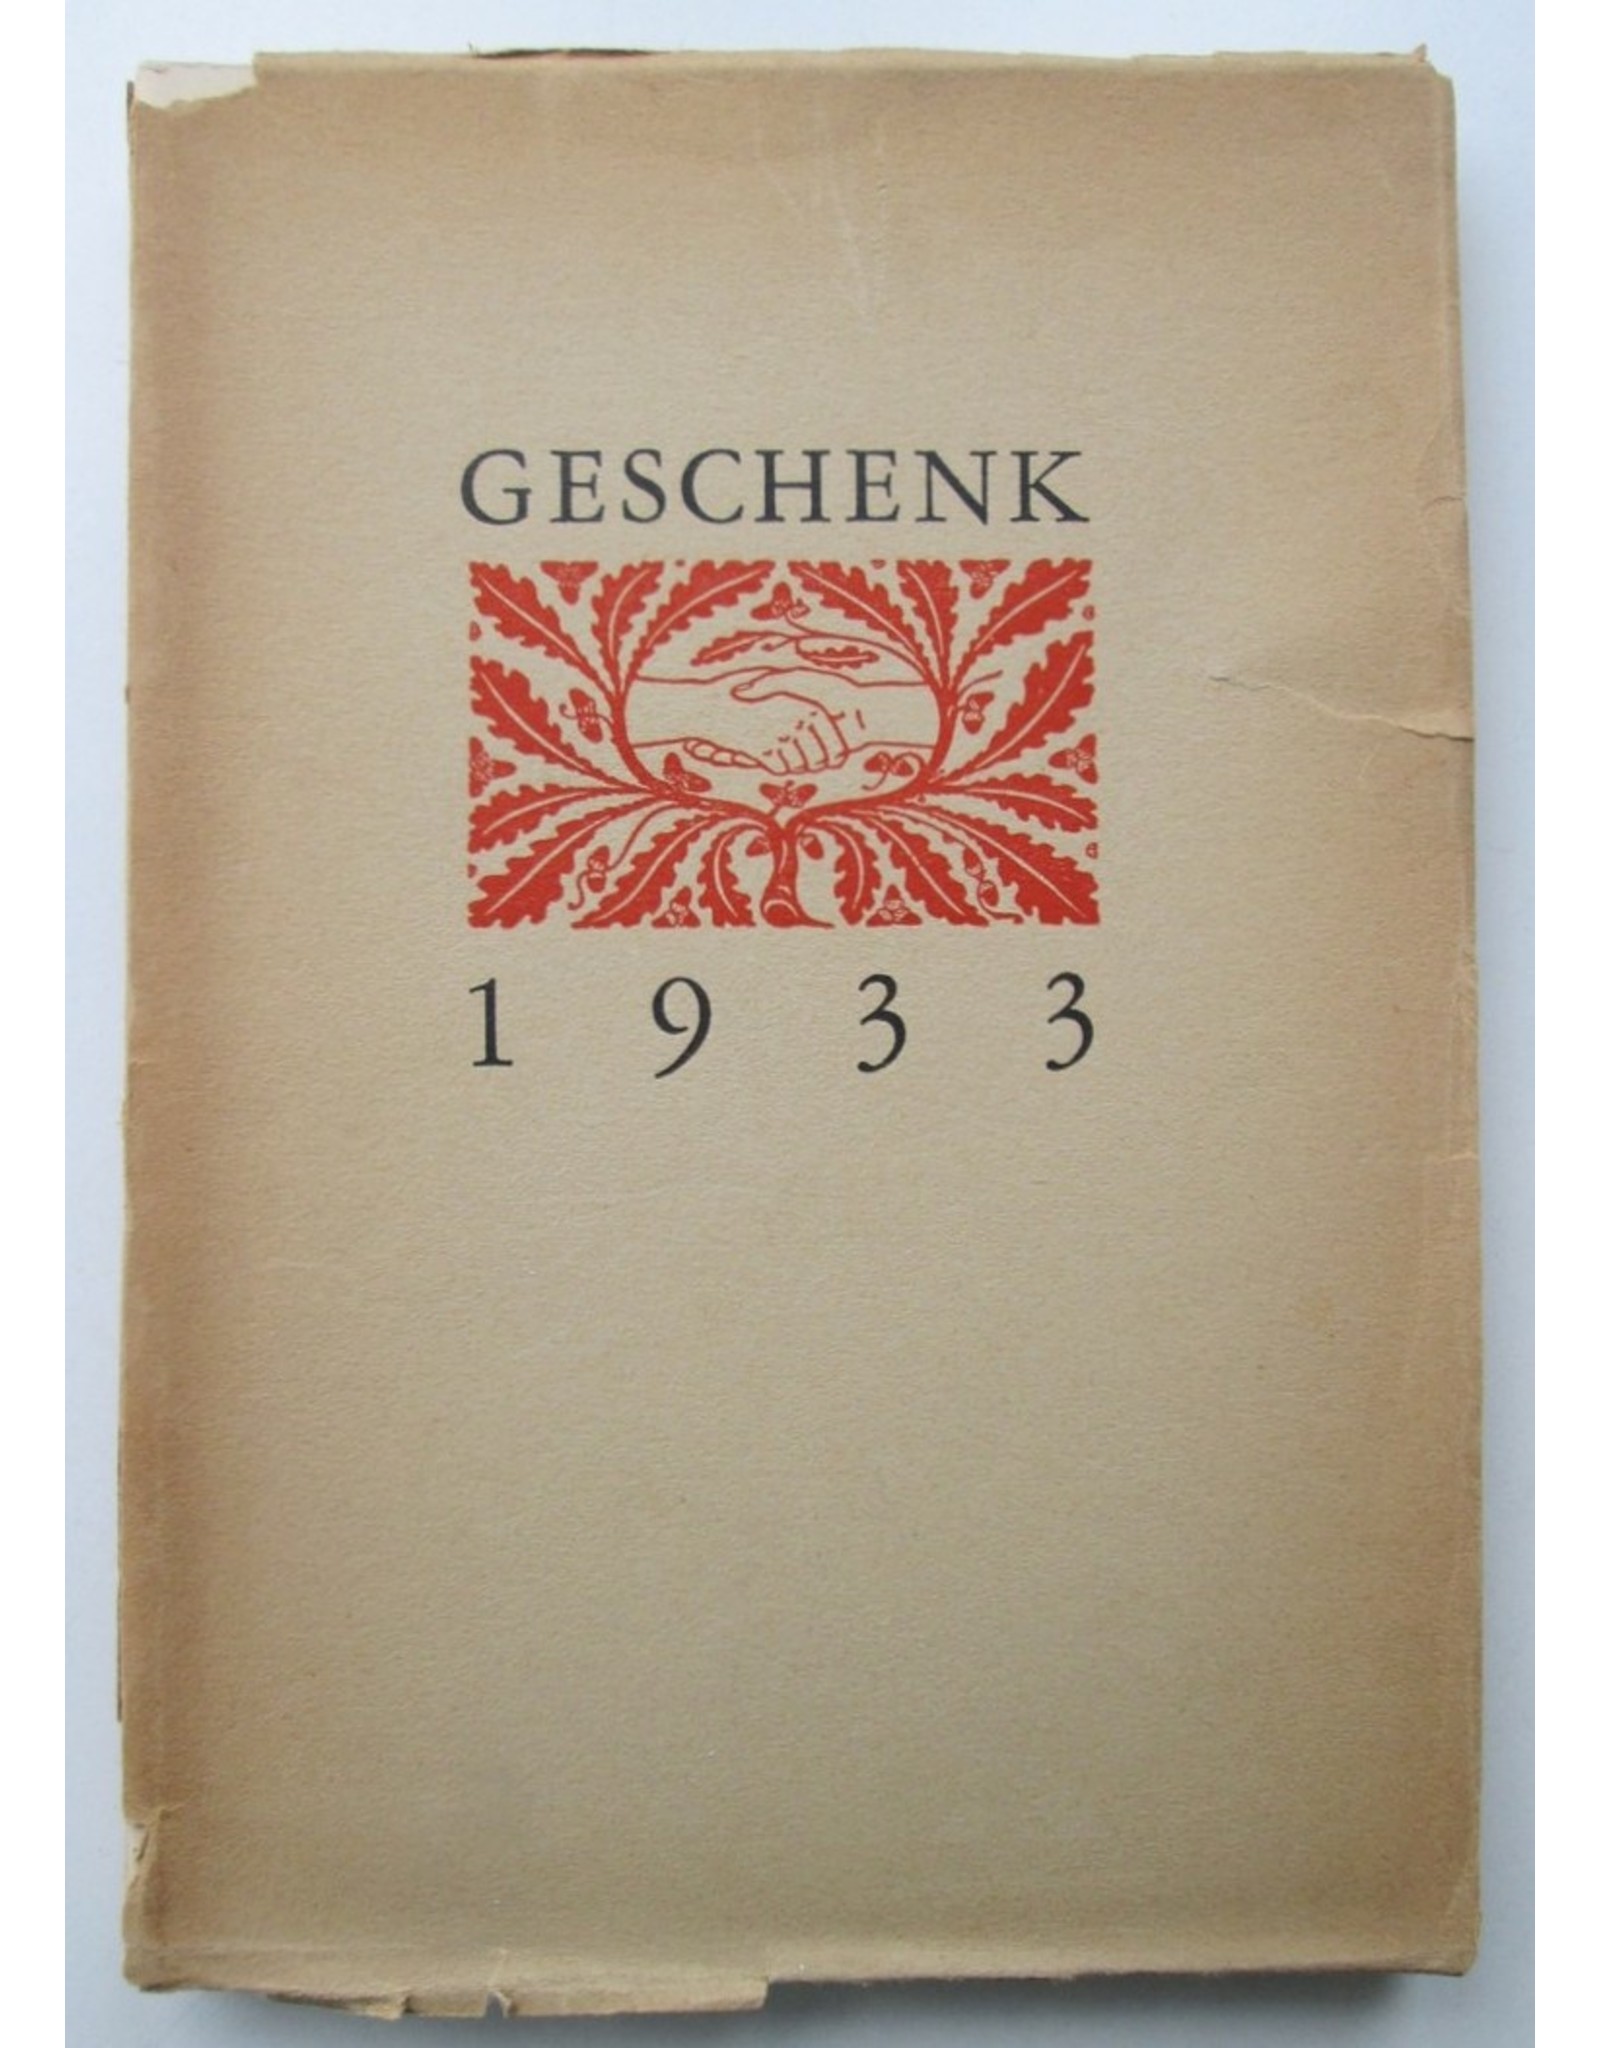 C.J. Kelk [ed.] - Geschenk 1933: Herinneringen aan Nederlandsche schrijfsters en schrijvers [due to] Nederlandsche Boekenweek 29 april-6 mei 1933